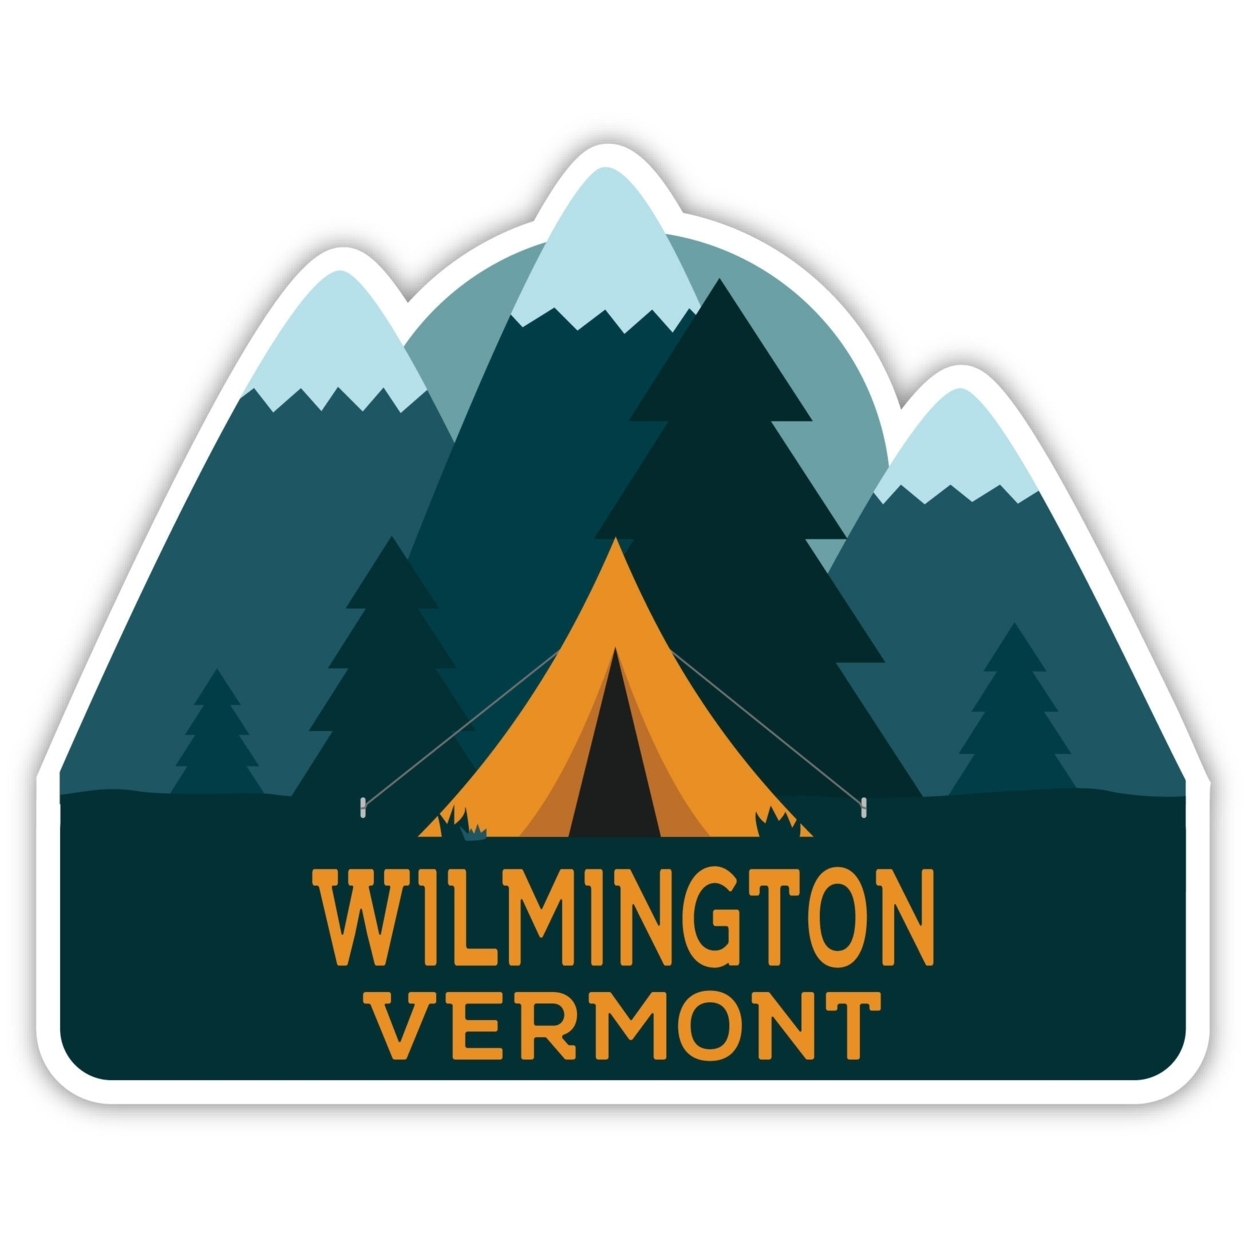 Wilmington Vermont Souvenir Decorative Stickers (Choose Theme And Size) - Single Unit, 4-Inch, Tent